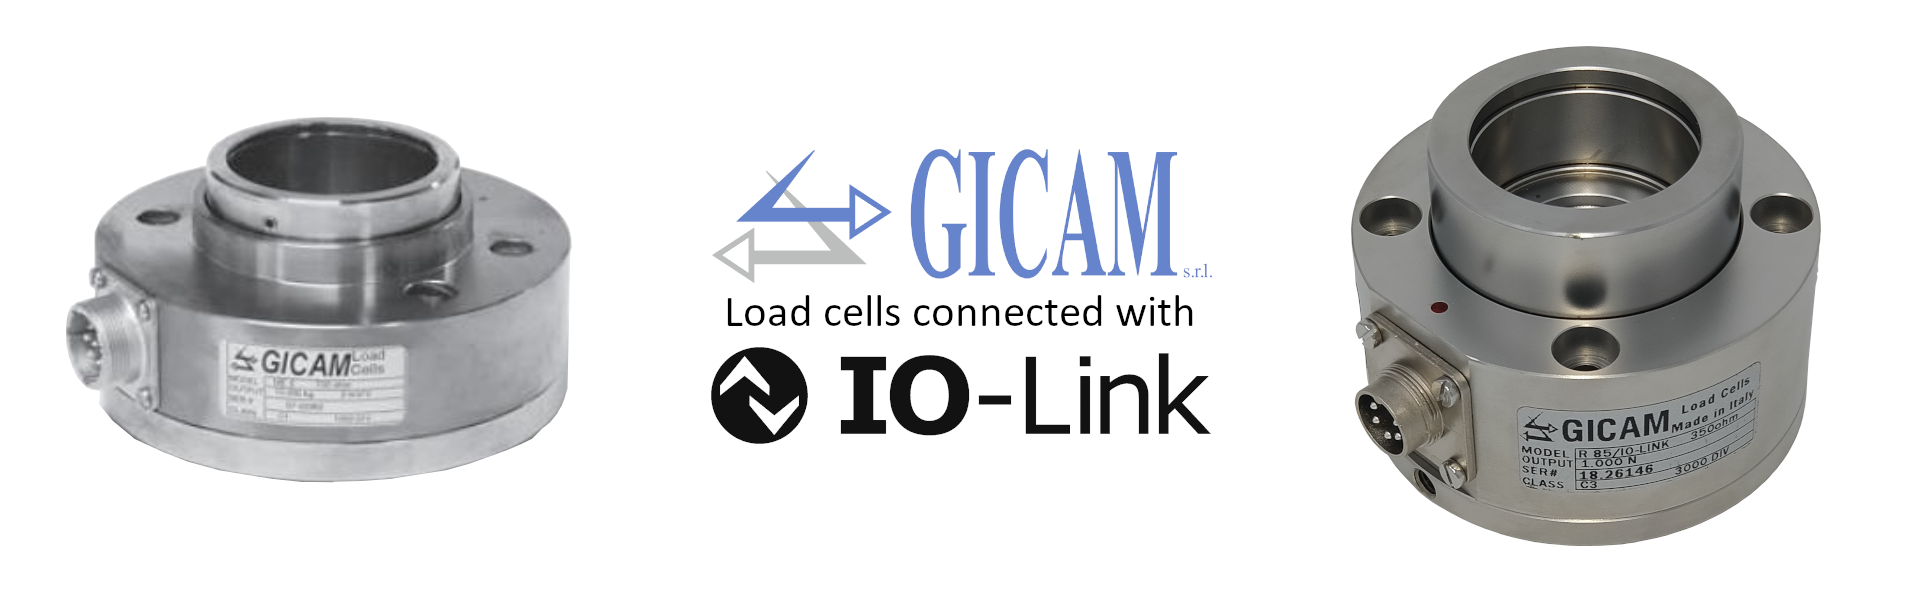 Neue IO-Link Gicam Wägezellen